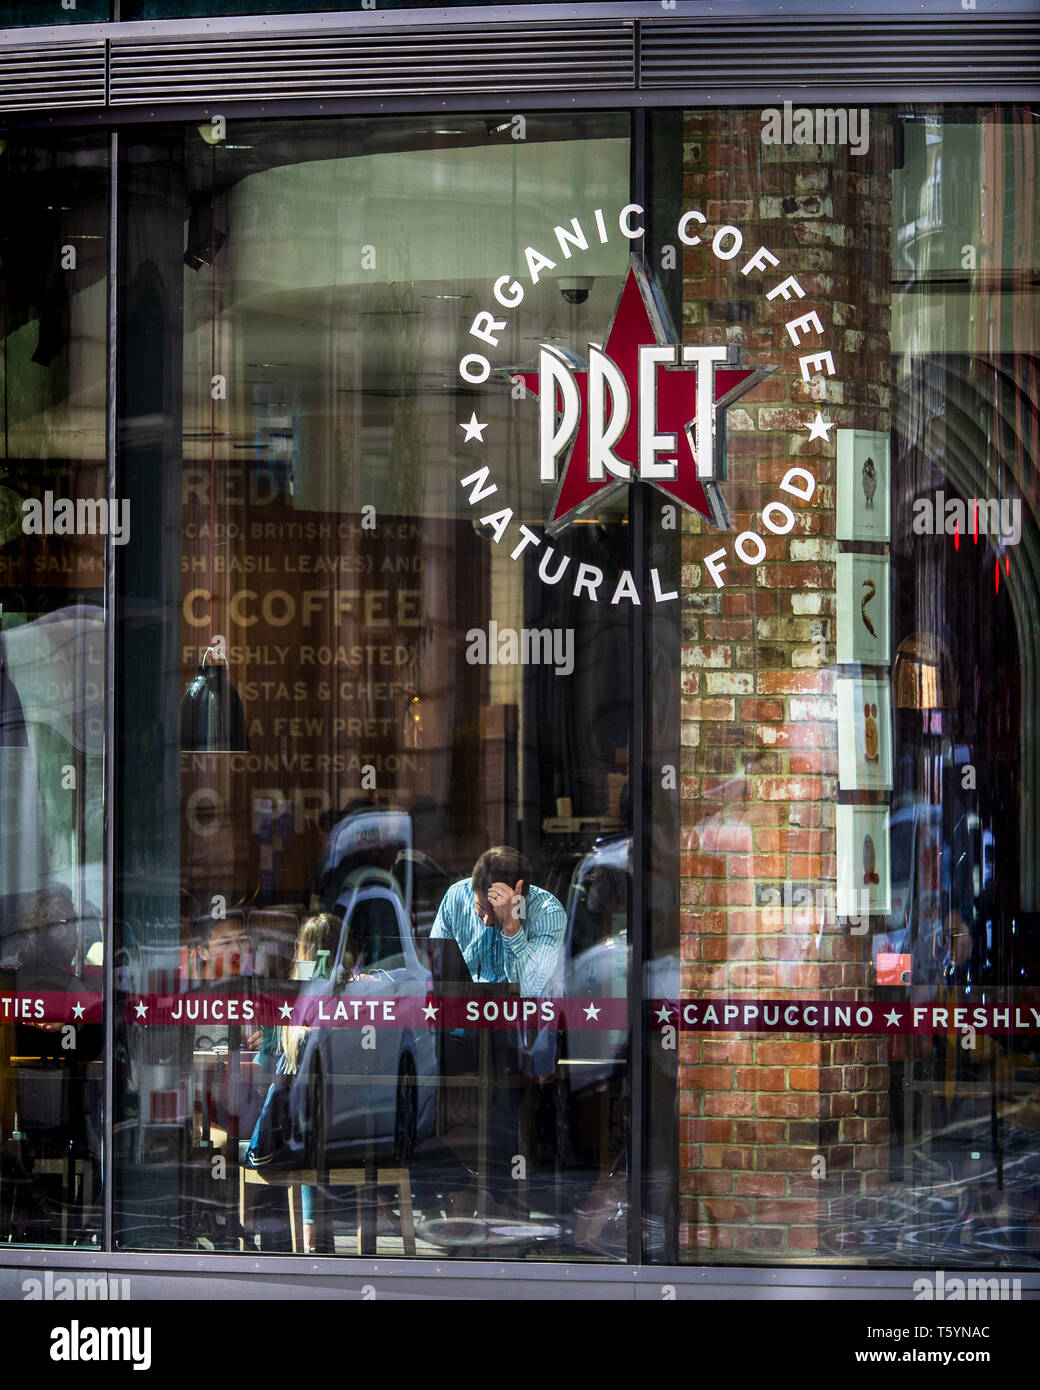 Pret a Manger Coffee Shop und Sandwich Store in London, Großbritannien. Pret ist eine in Großbritannien ansässige Kette 1983 gegründet. Stockfoto